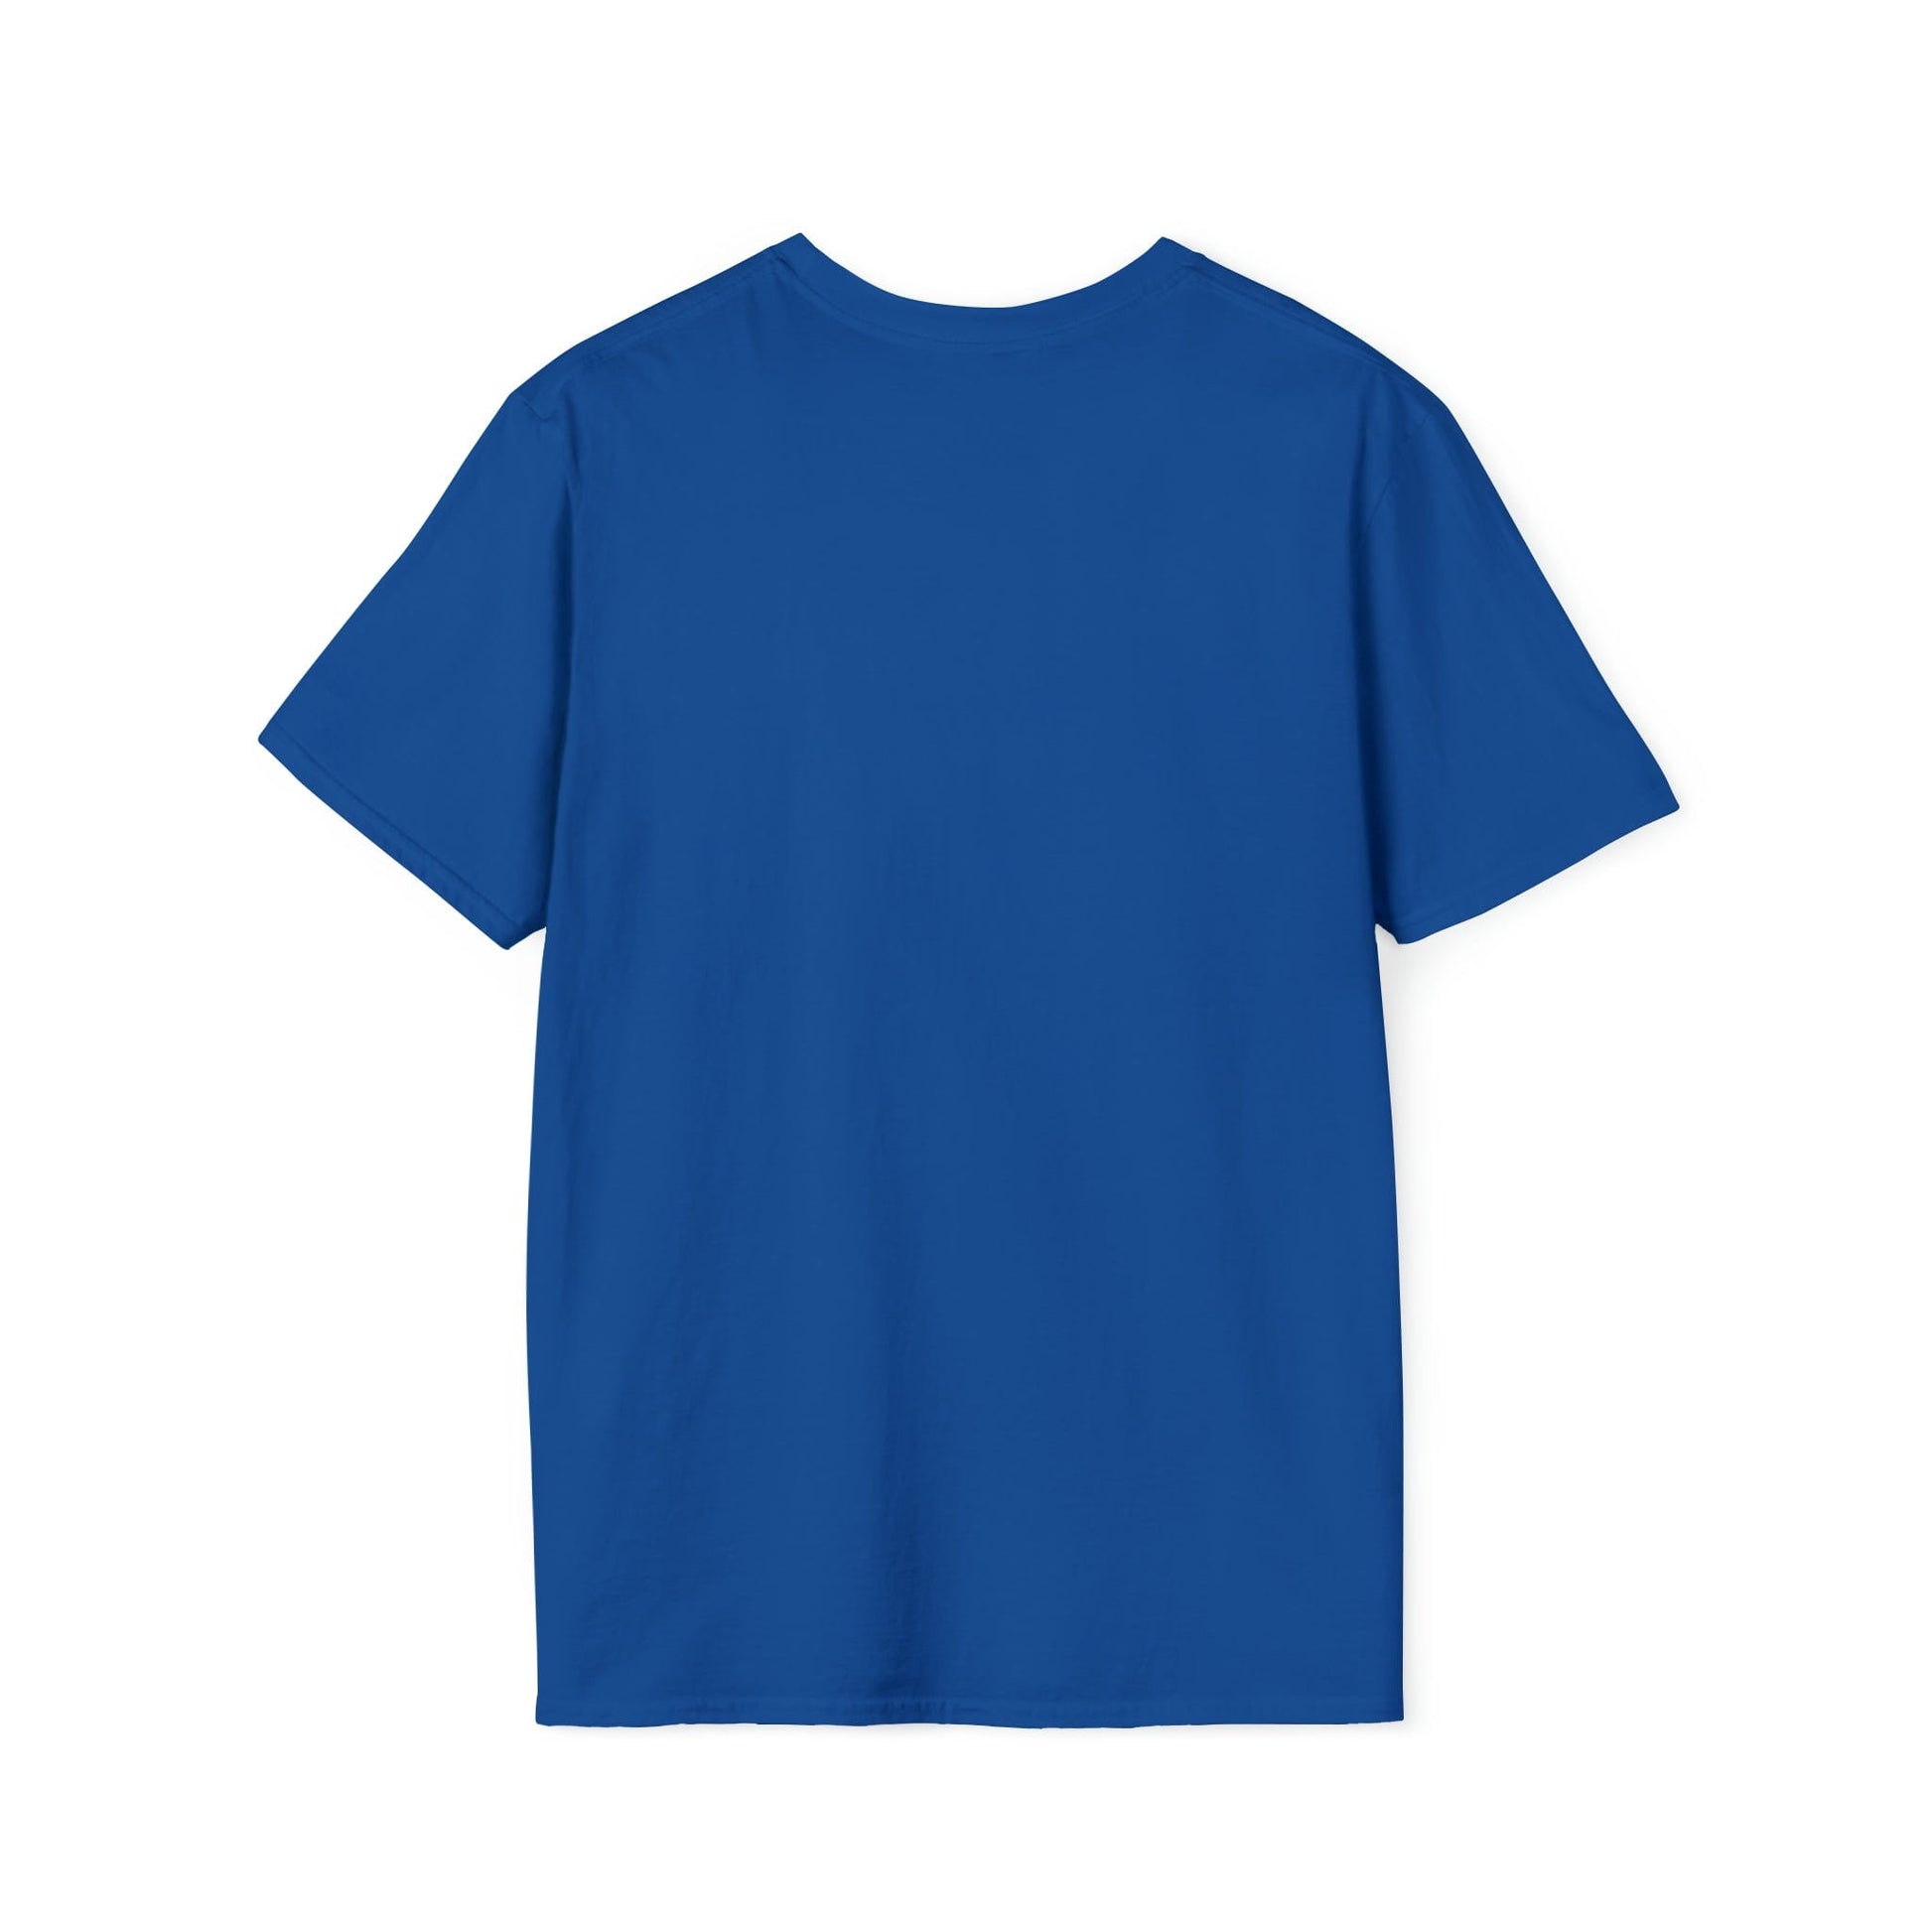 T-Shirt KEYHOLDER bag Inspo - Chastity Shirts by LockedBoy Athletics LEATHERDADDY BATOR